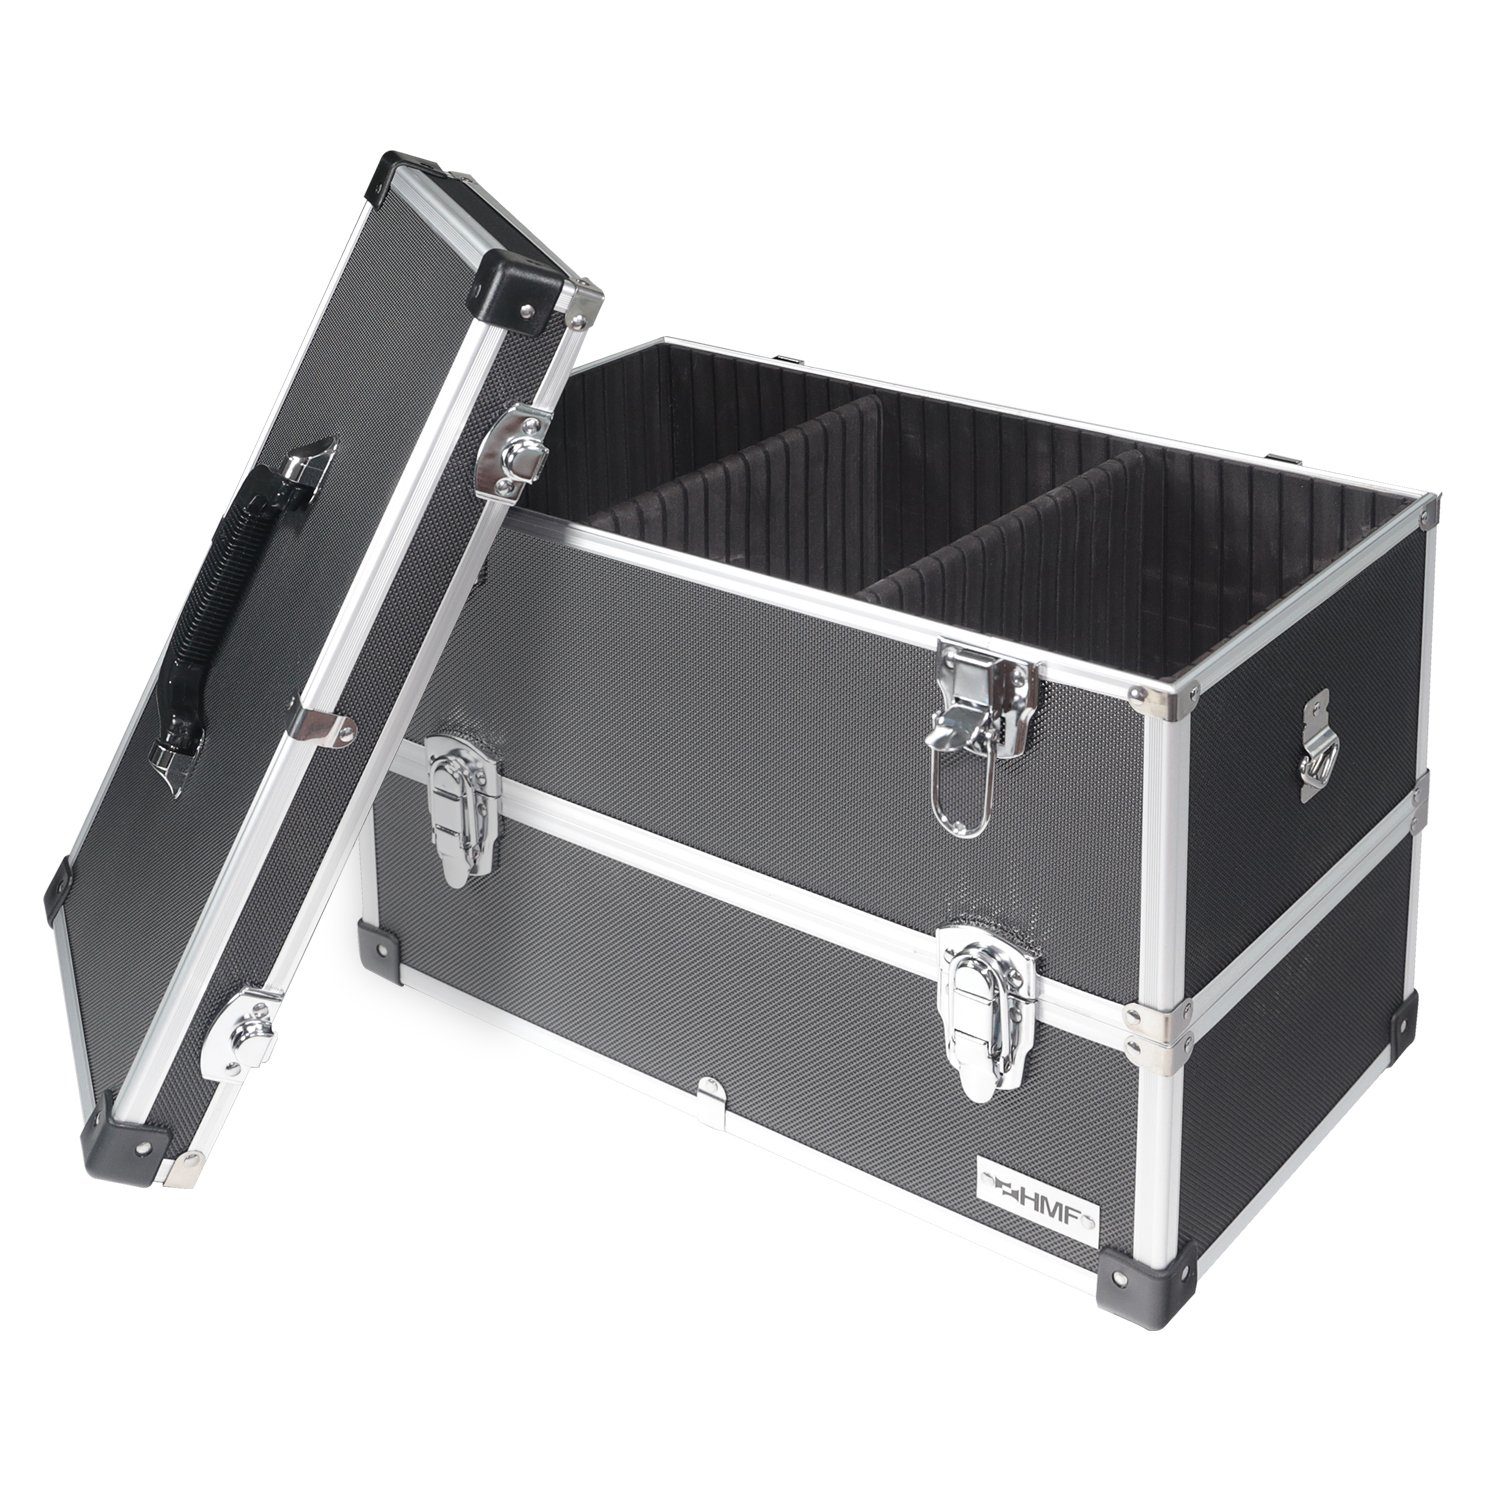 HMF Werkzeugkoffer geräumiger Utensilien Koffer mit Trennwänden, Transportkoffer für Werkzeug, Angel Sachen und Kosmetik, 44x32,5x24 cm